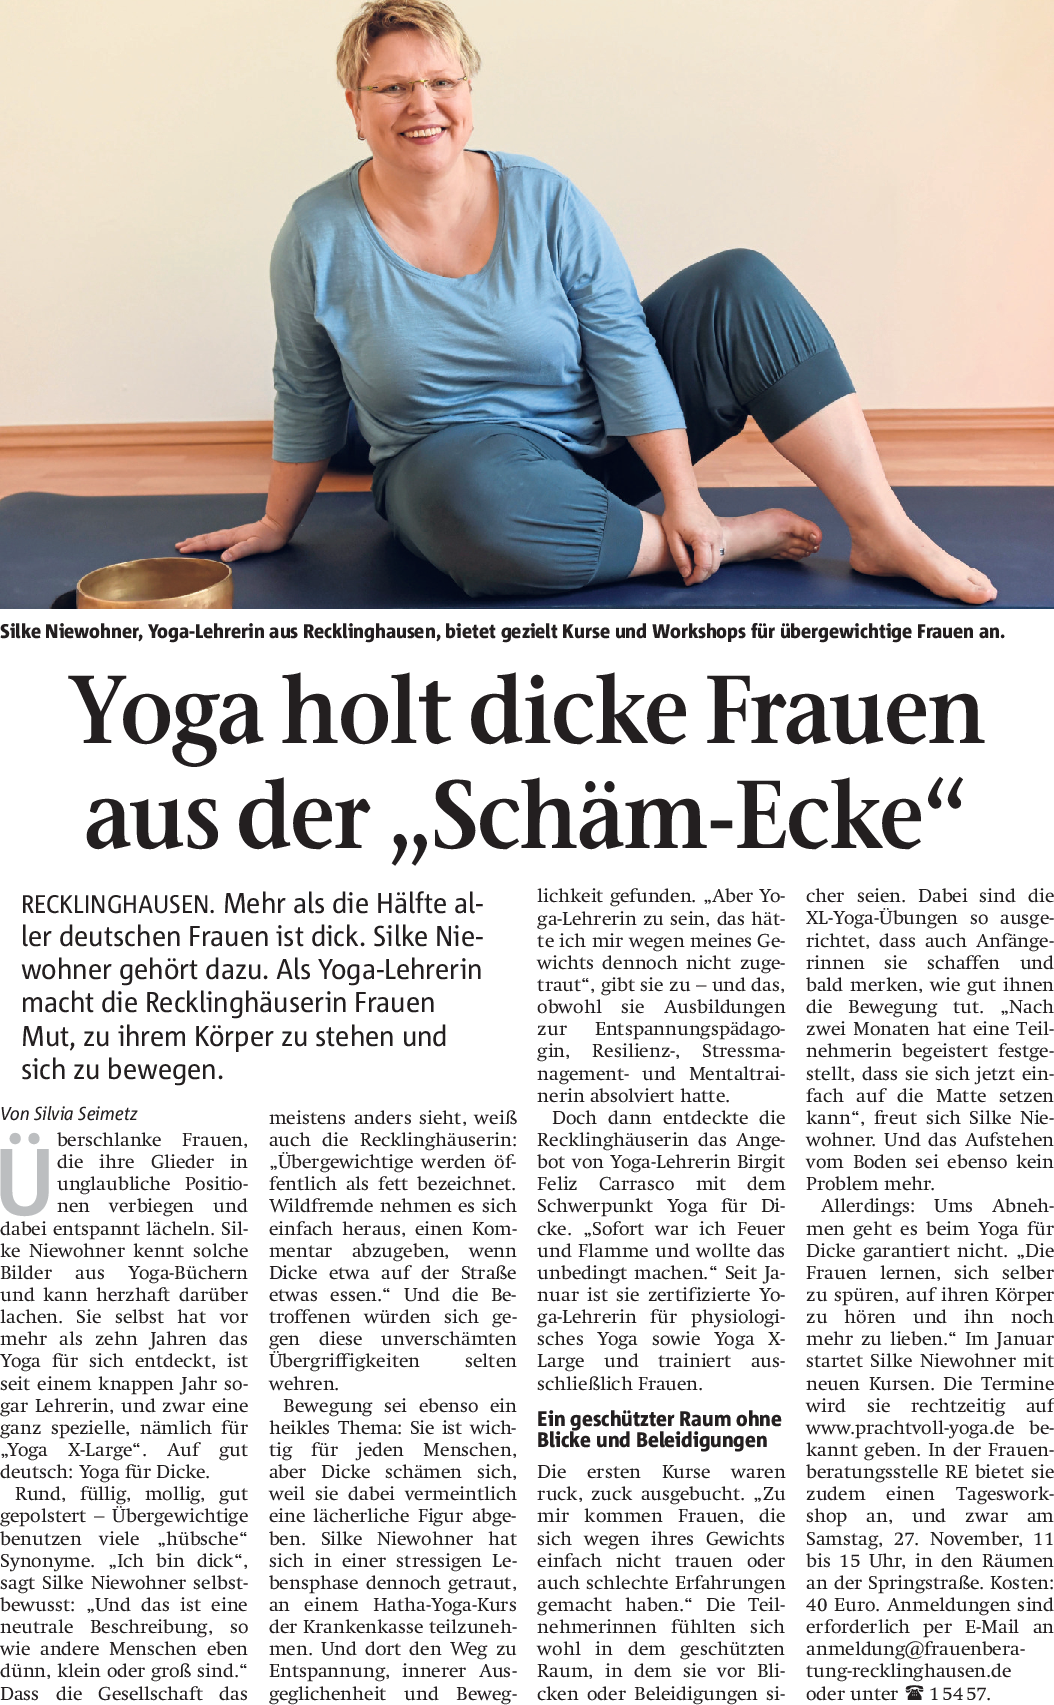 Zeitungsartikel zum Thema Sport für übergewichtige Frauen in Recklinghausen. Titel: Yoga holt dicke Frauen aus der "Schäm-Ecke" (Aus RZ 16.11.2021)